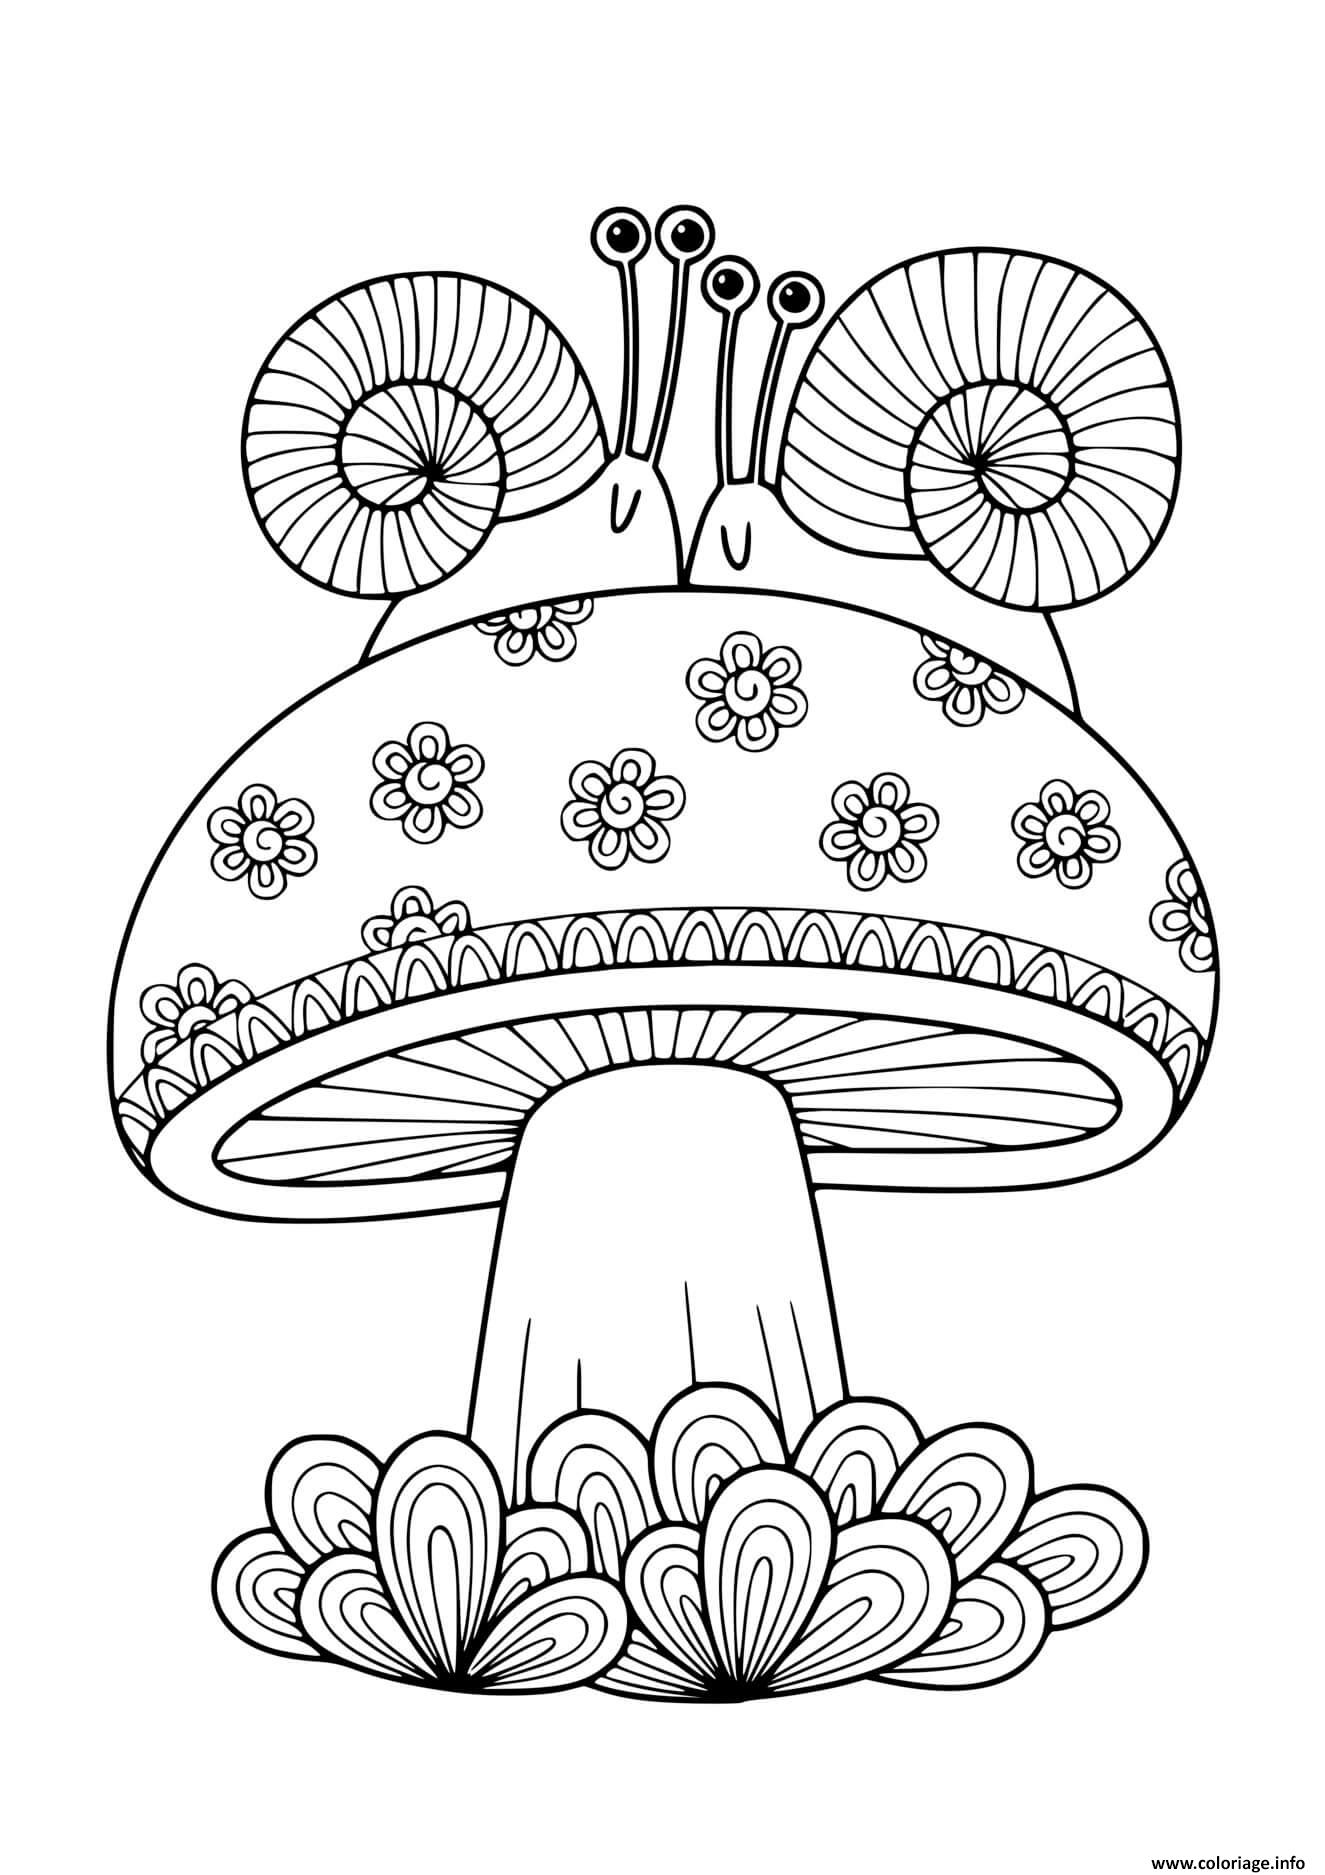 coloriage champignon adulte avec deux escargots dessin a imprimer avengers infinity war gratuit